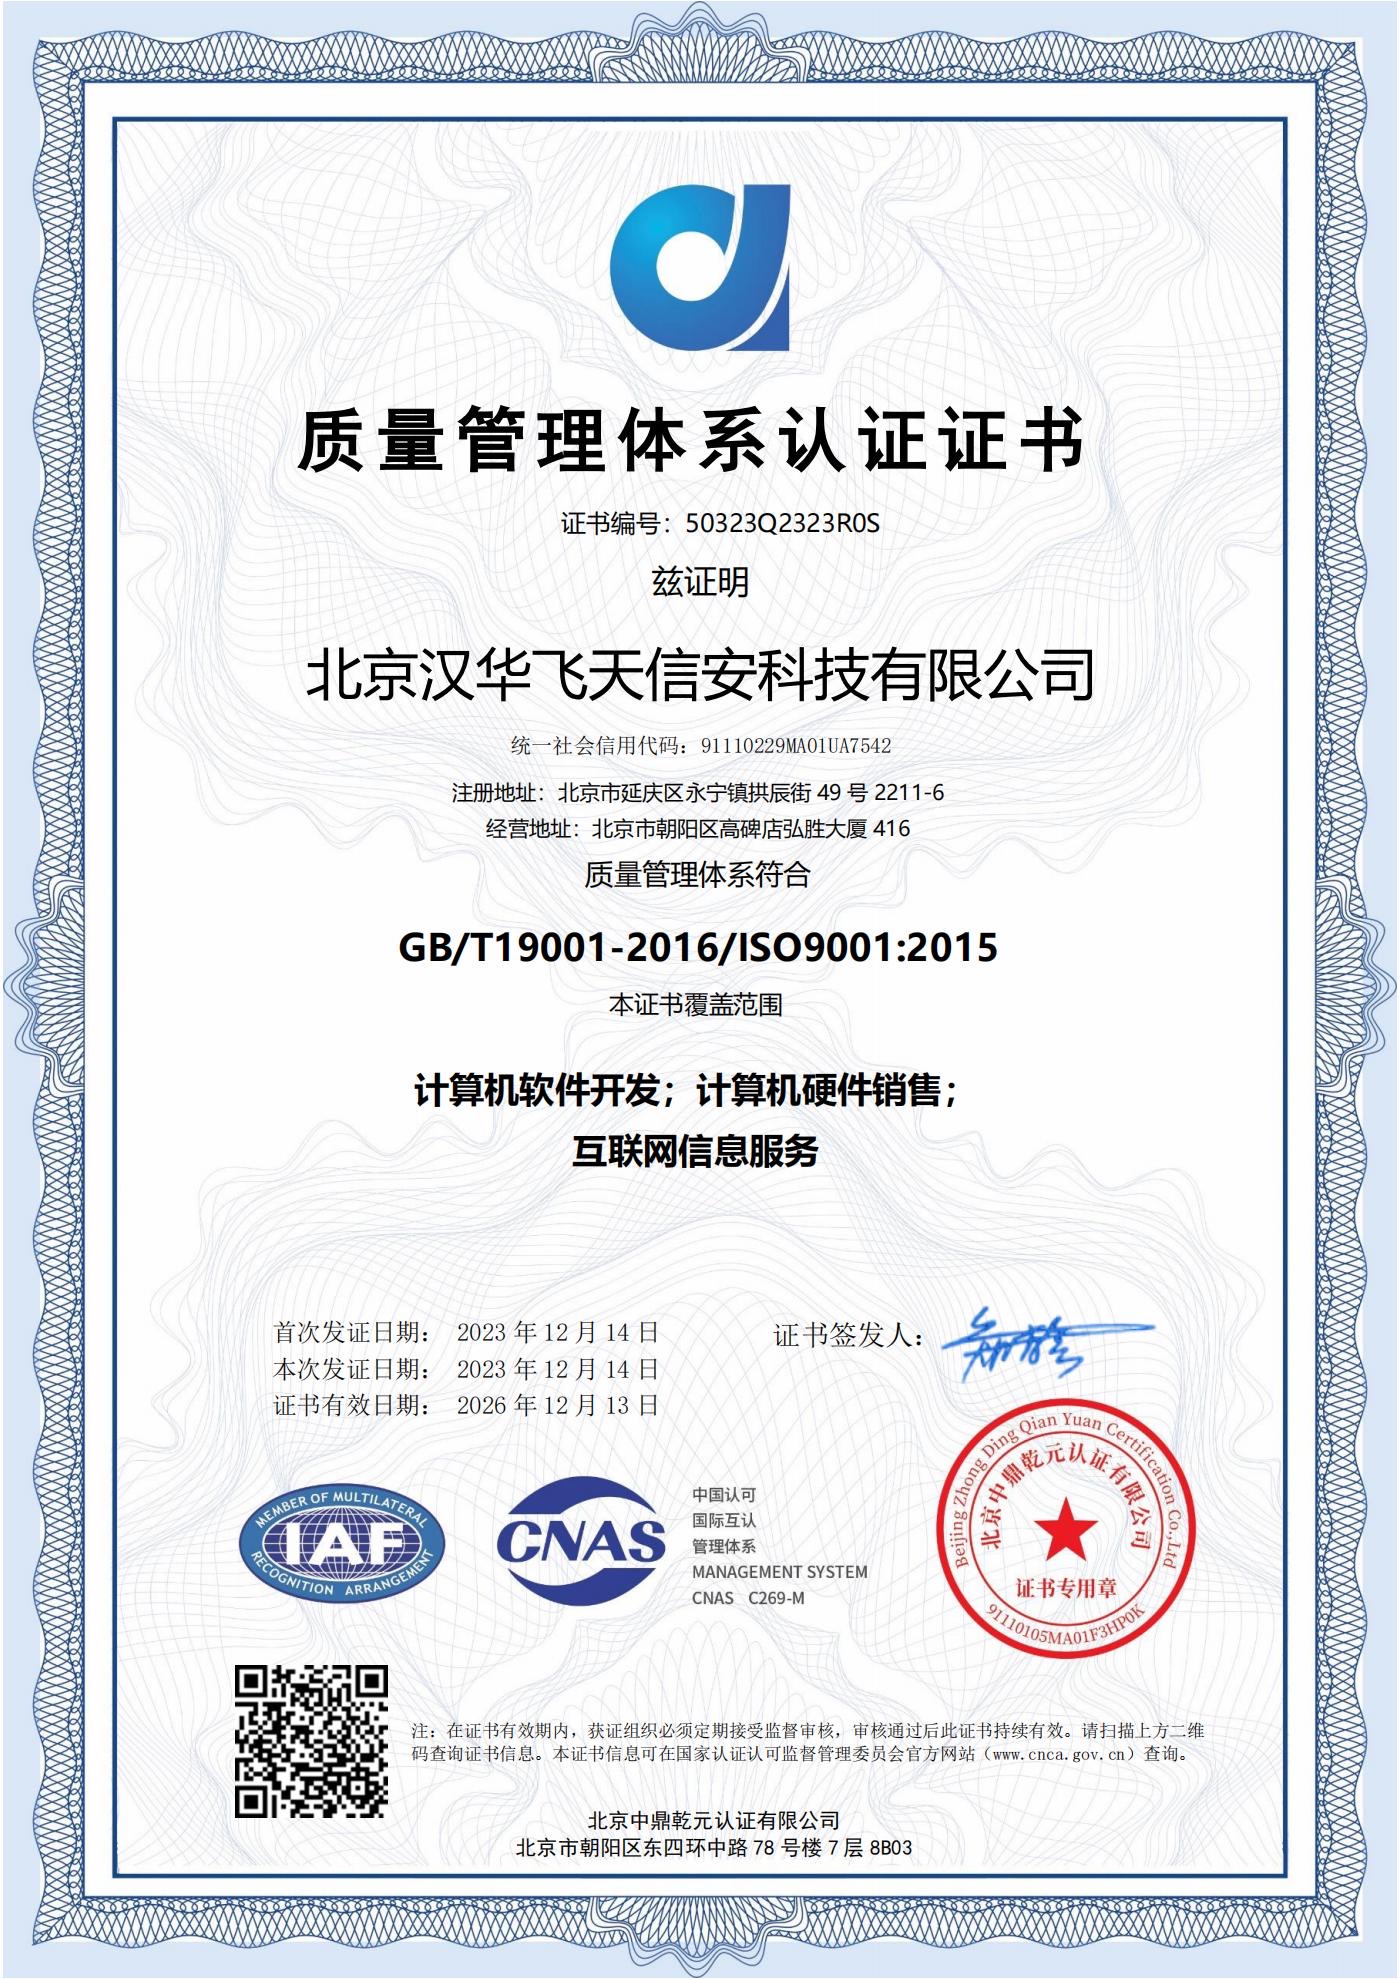 汉华信安 | 荣获ISO9001质量管理体系认证证书